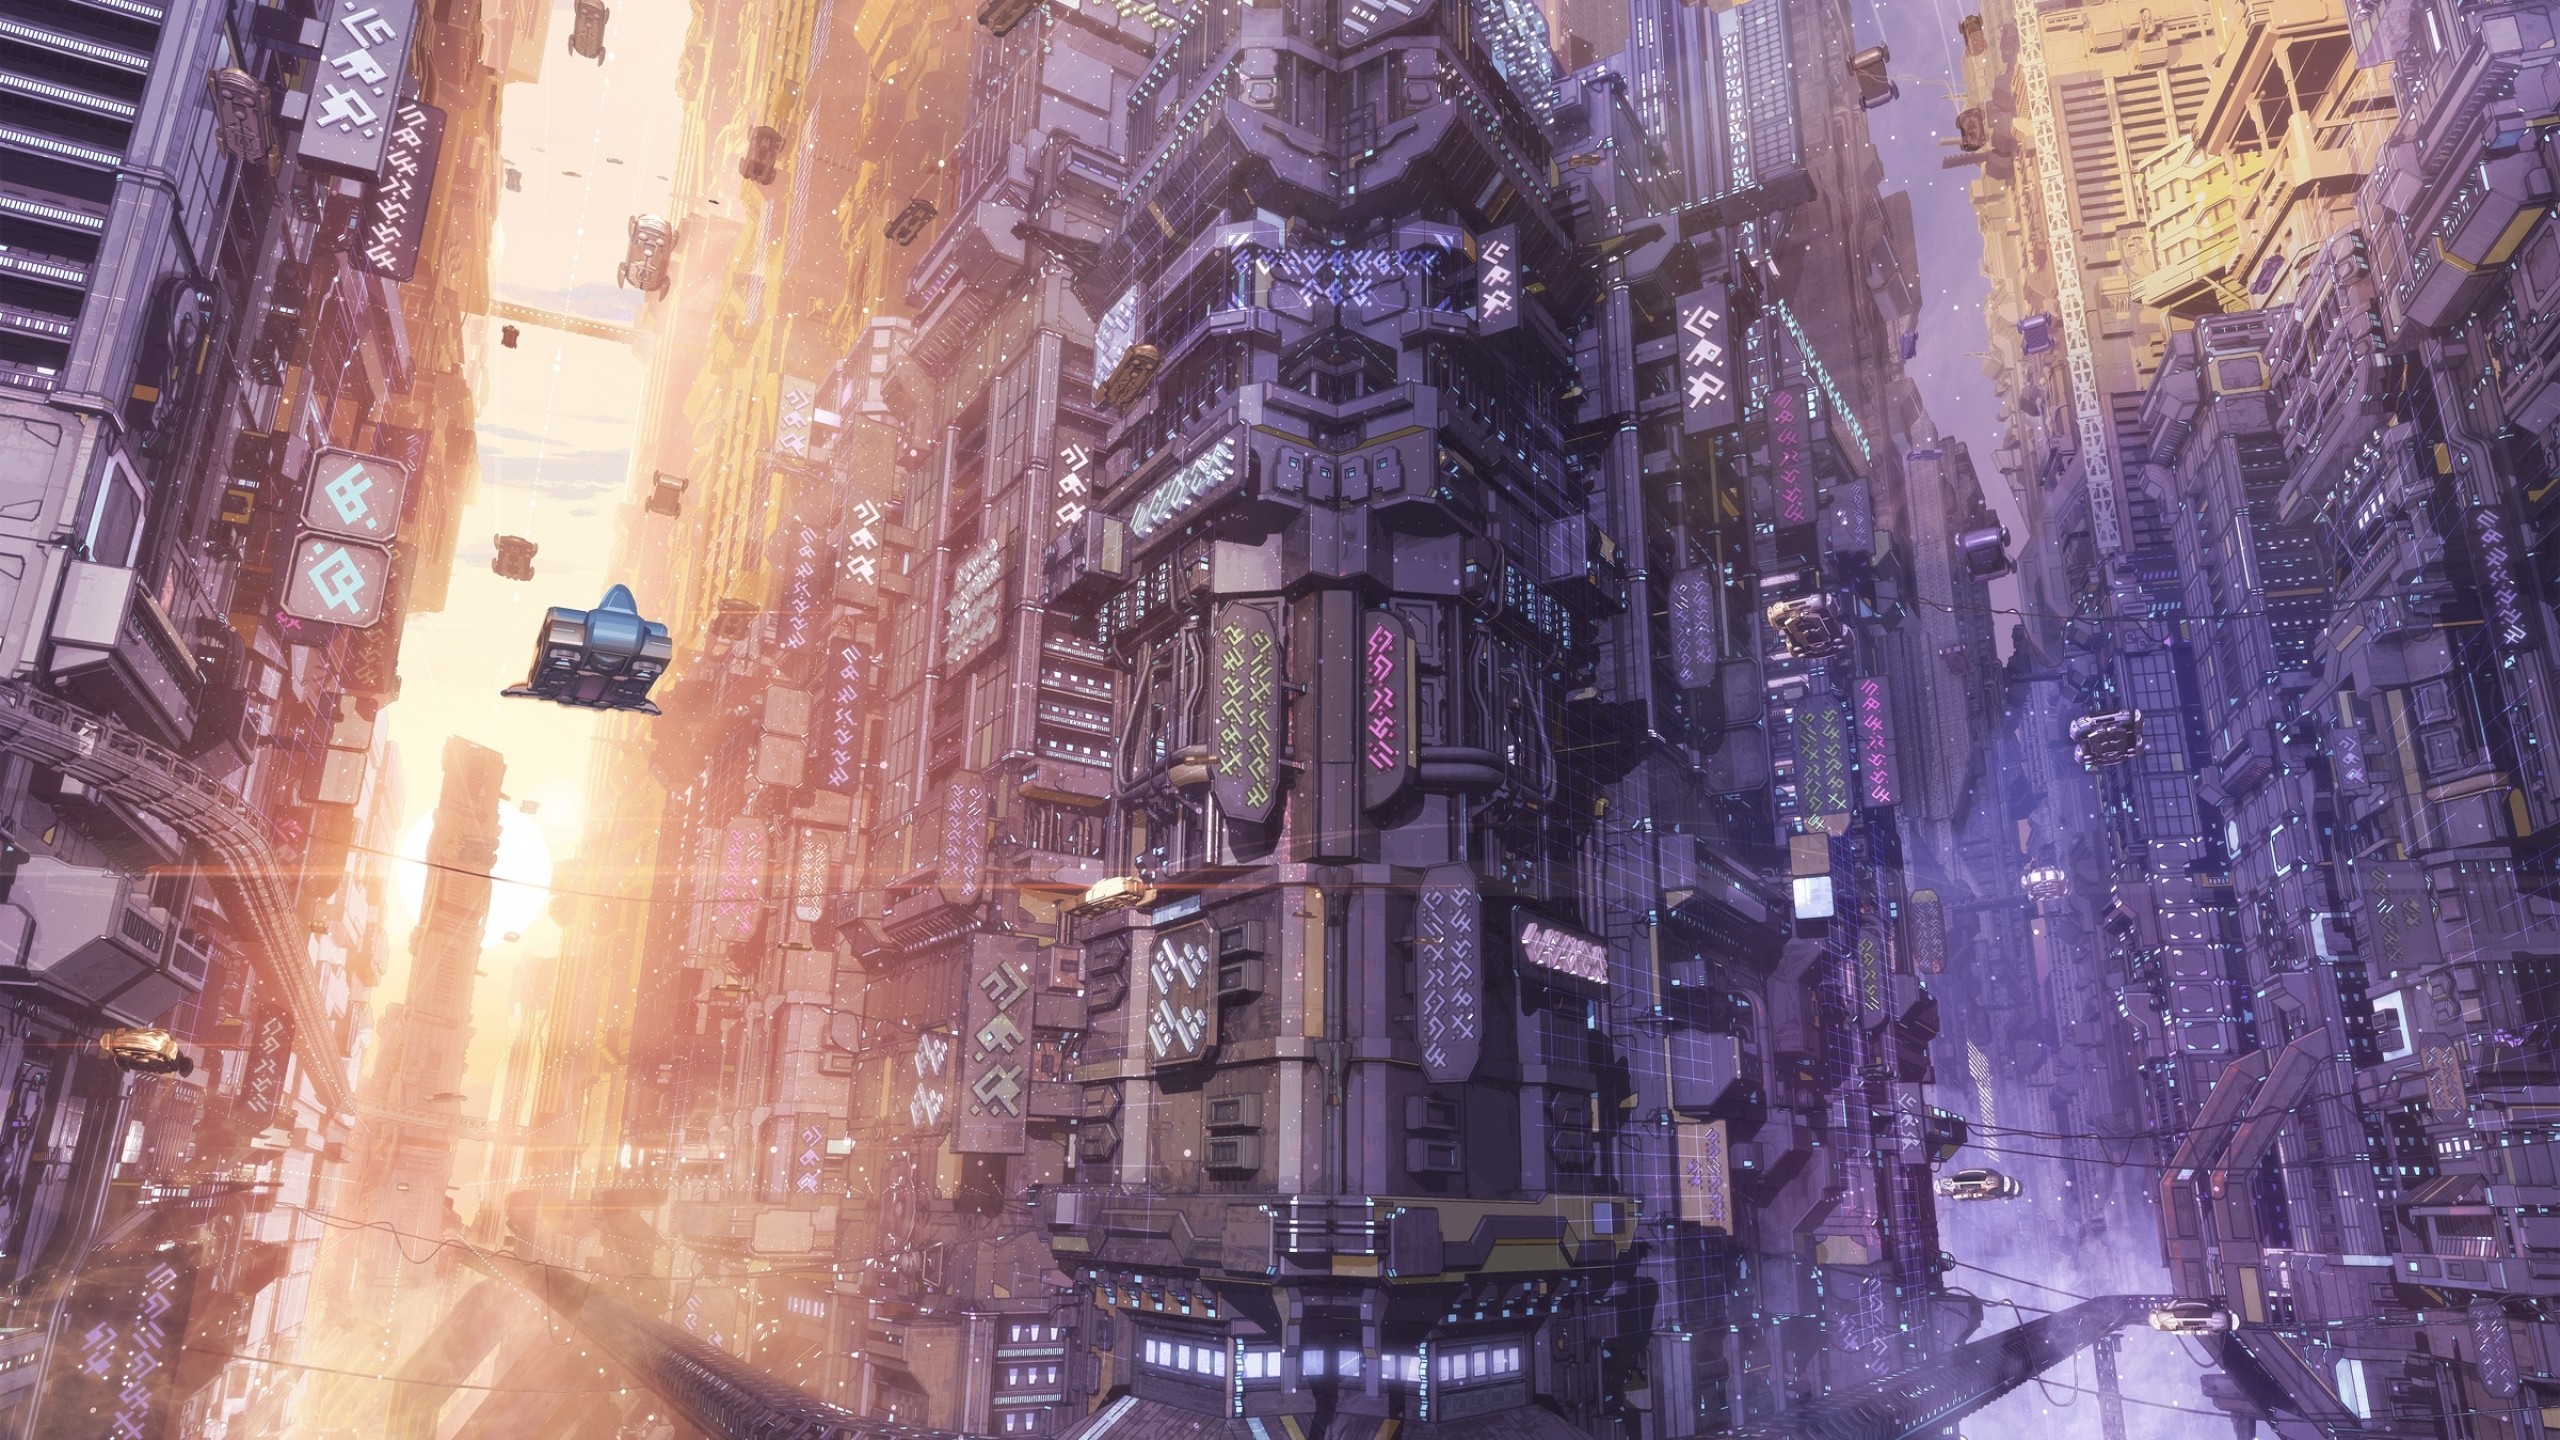 General 2560x1440 futuristic futuristic city artwork science fiction cityscape